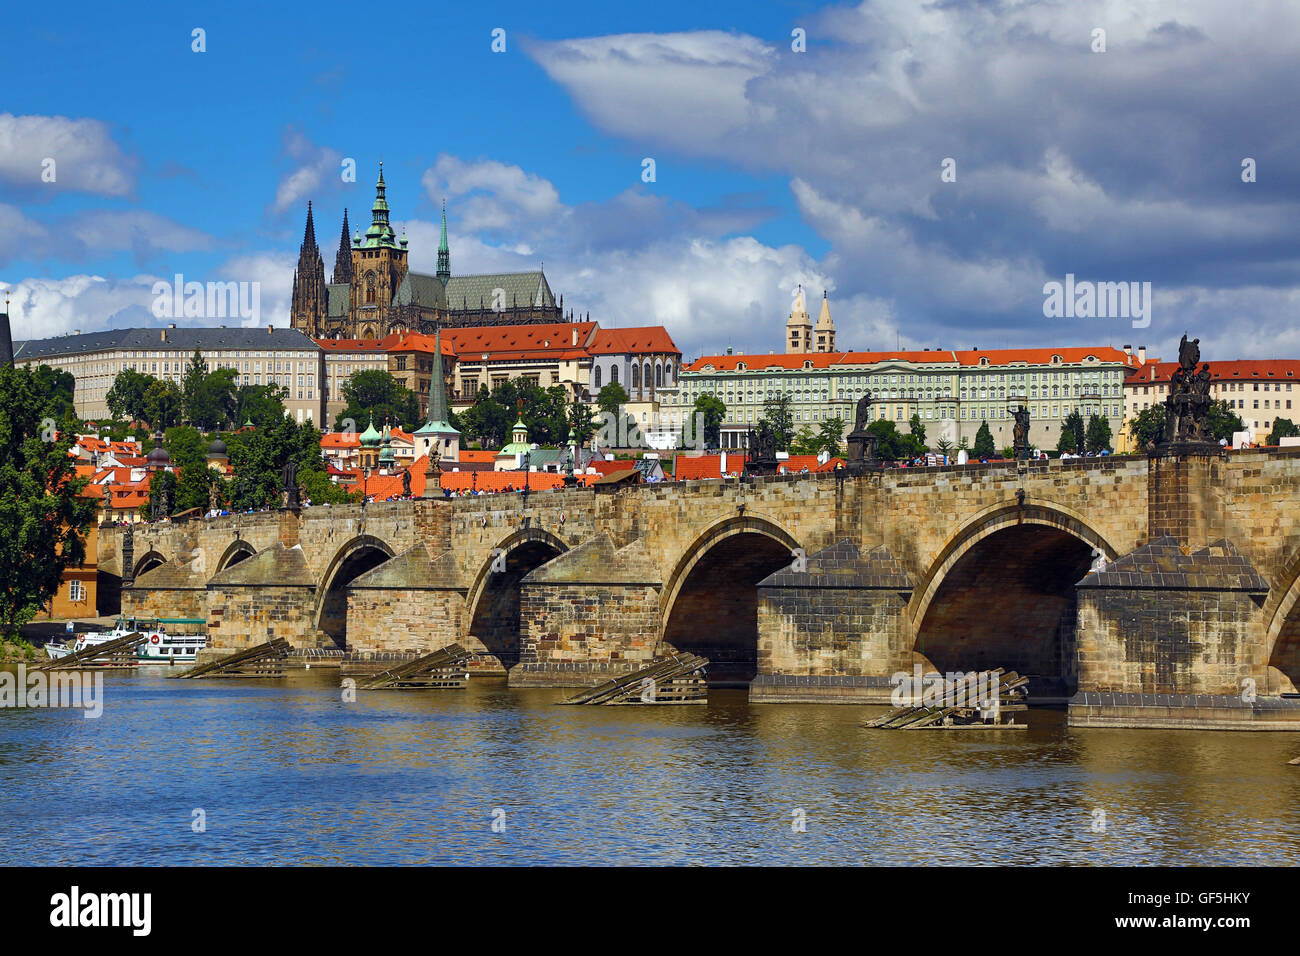 Catedral de San Vito y el Castillo de Praga con el Puente de Carlos sobre el río Moldava en Praga, República Checa Foto de stock